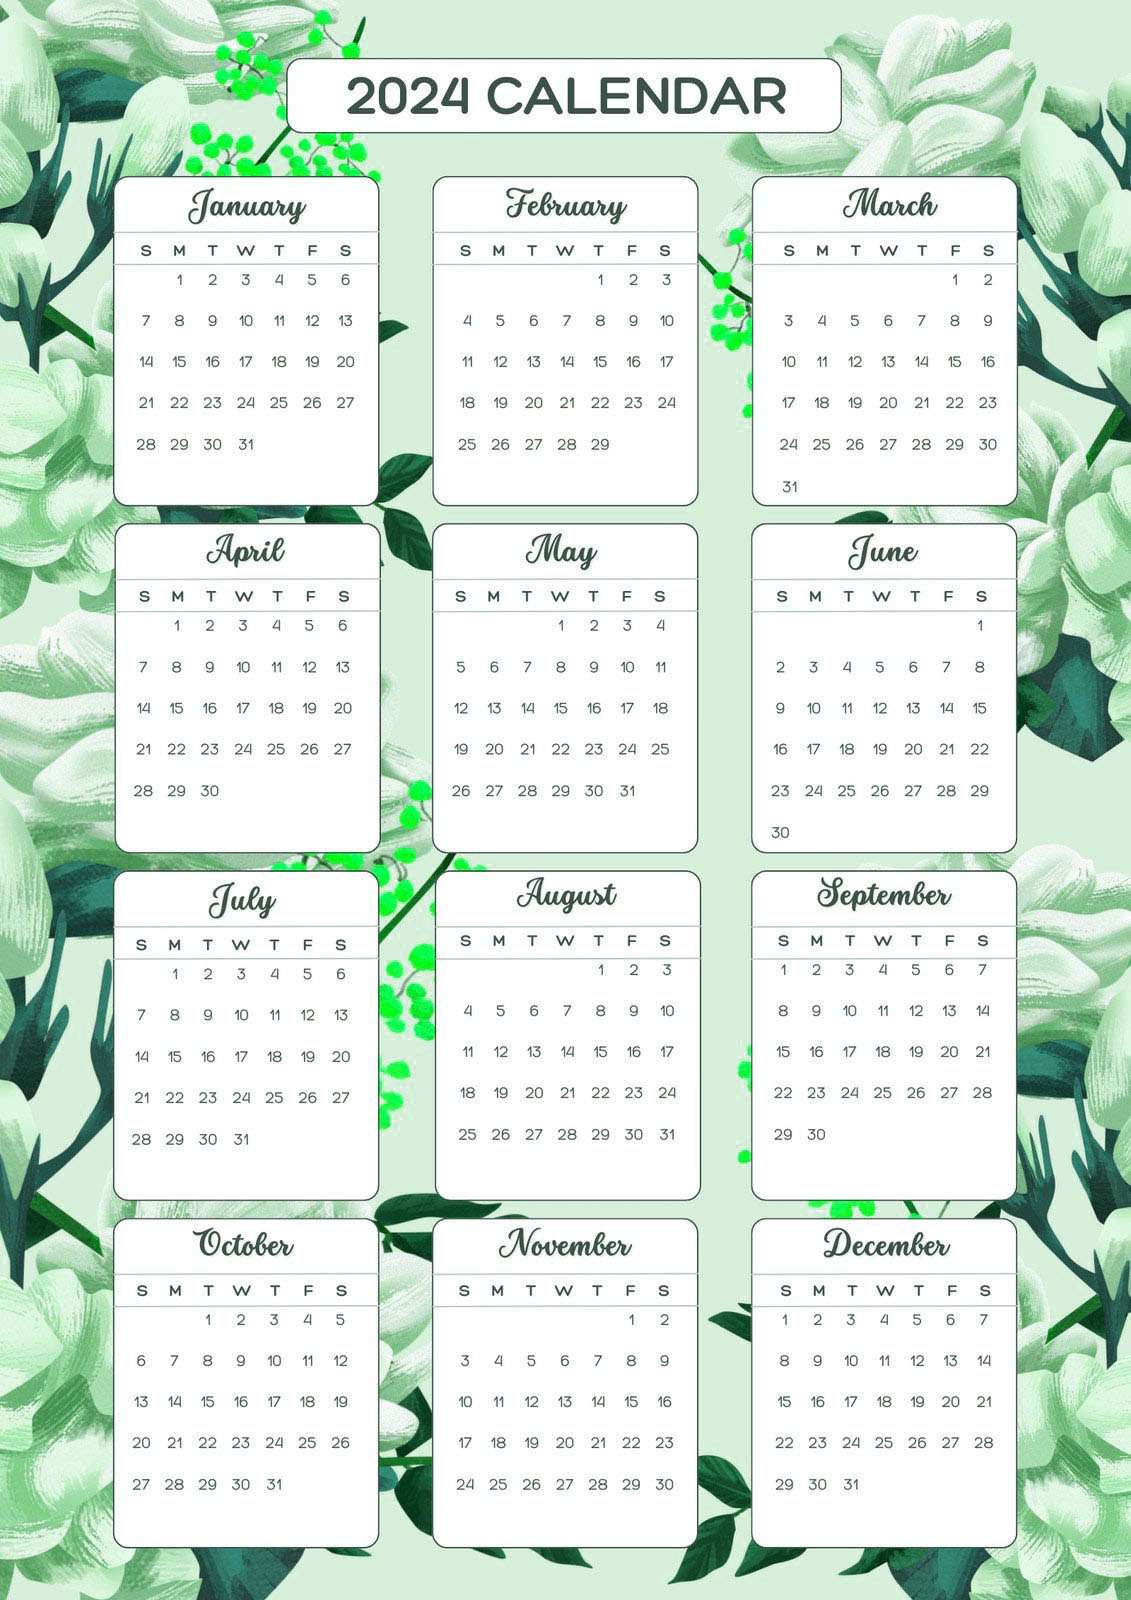 2024 Calendar Daily Program